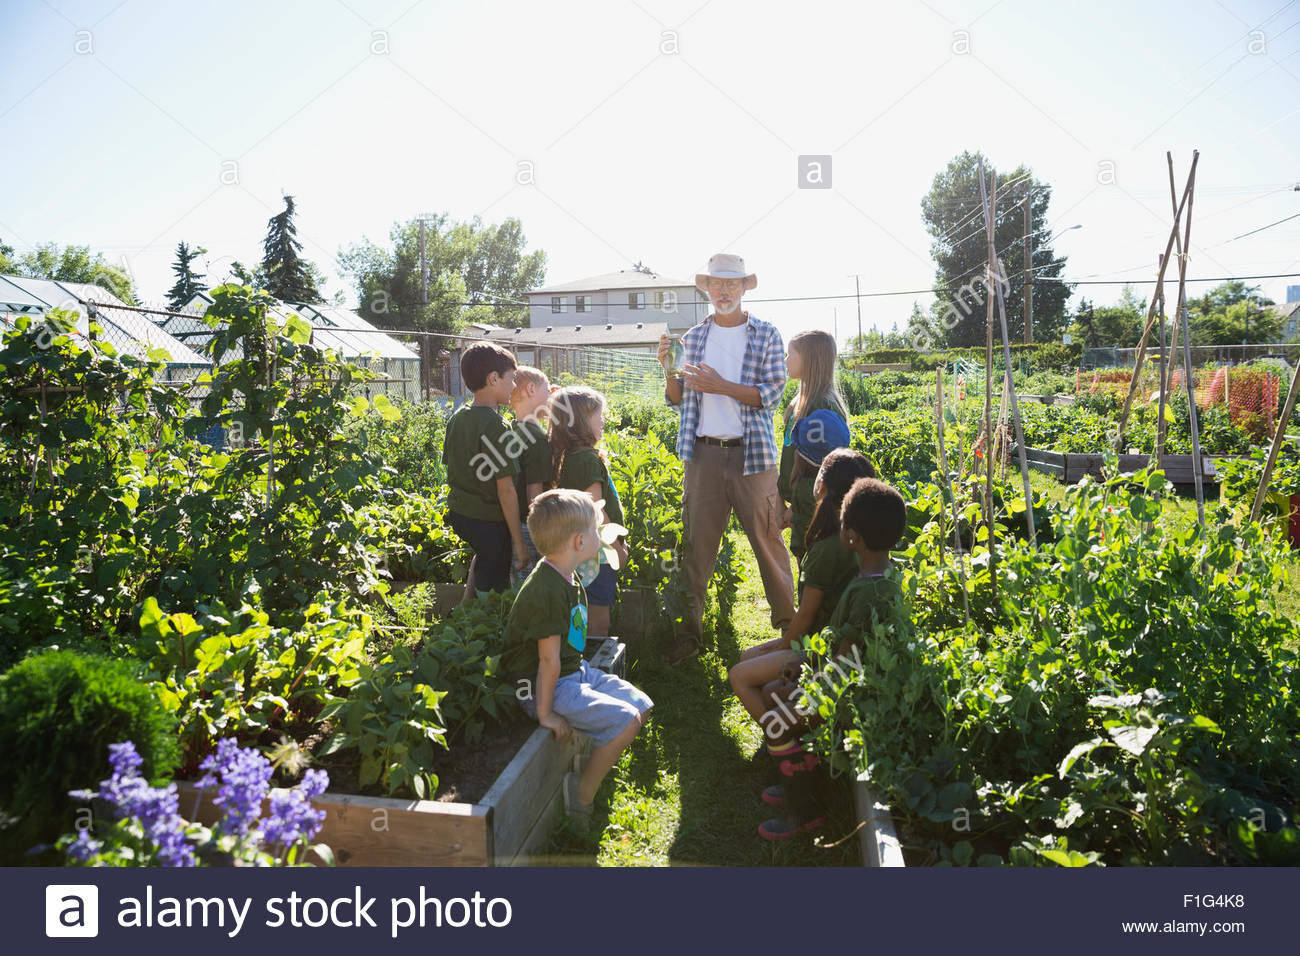 Garden expert teaching kids in sunny vegetable garden Stock Photo